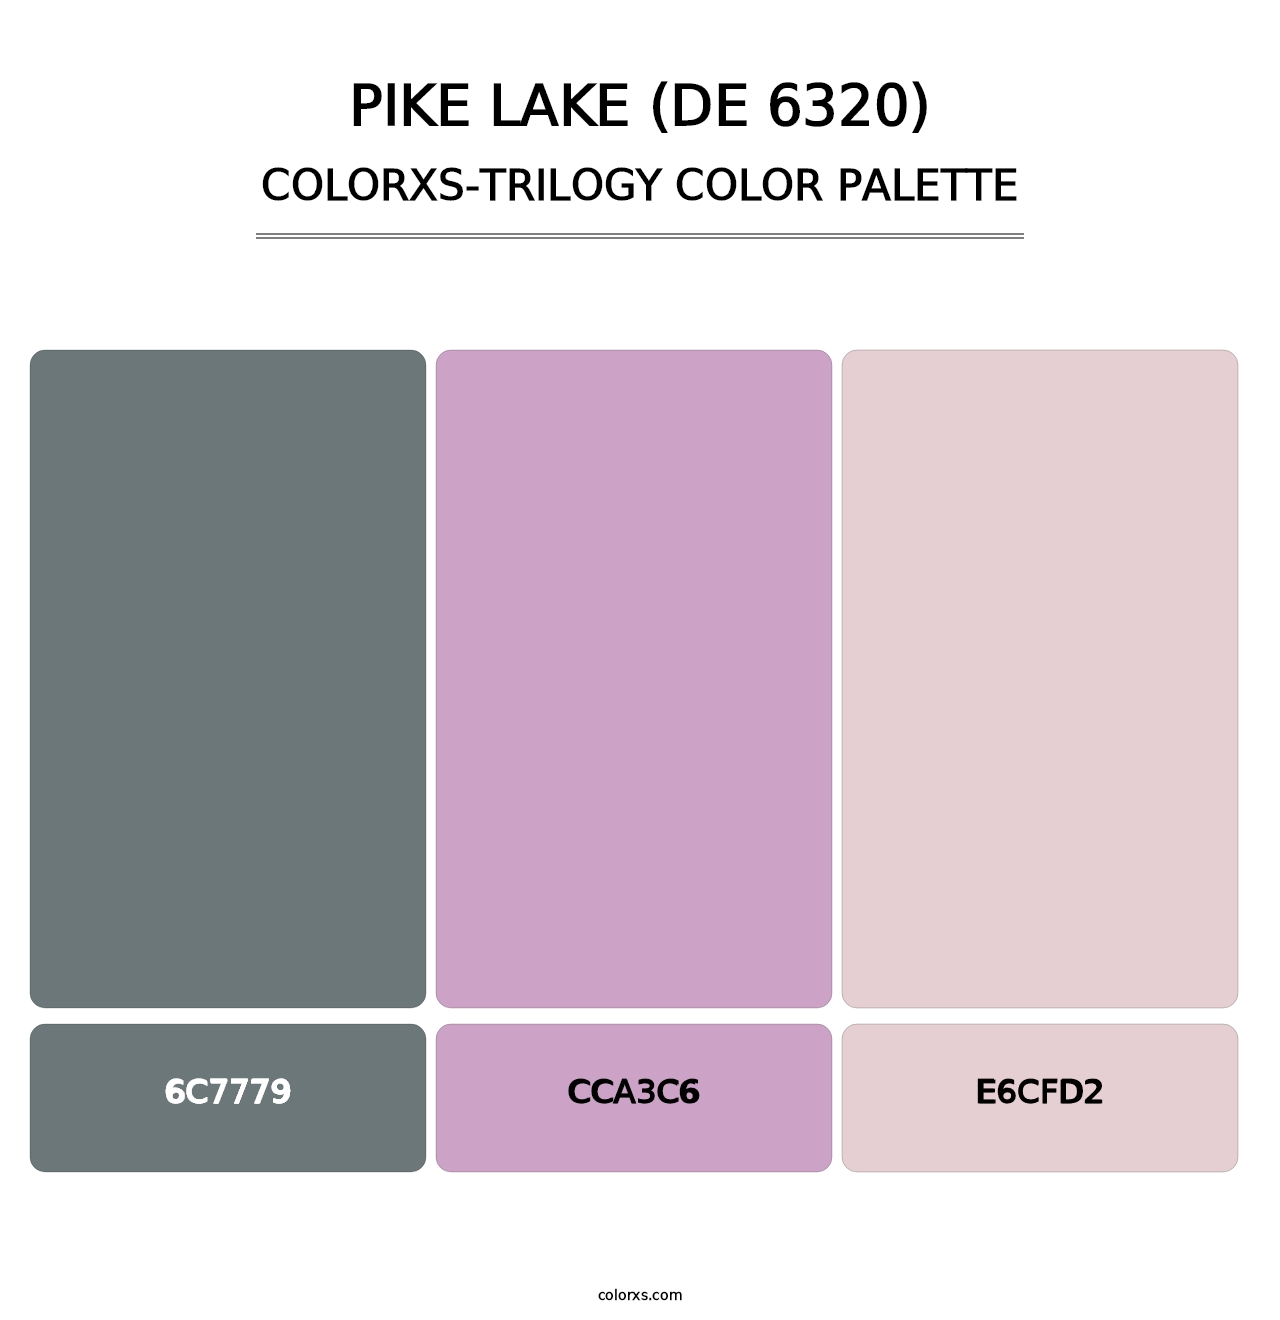 Pike Lake (DE 6320) - Colorxs Trilogy Palette